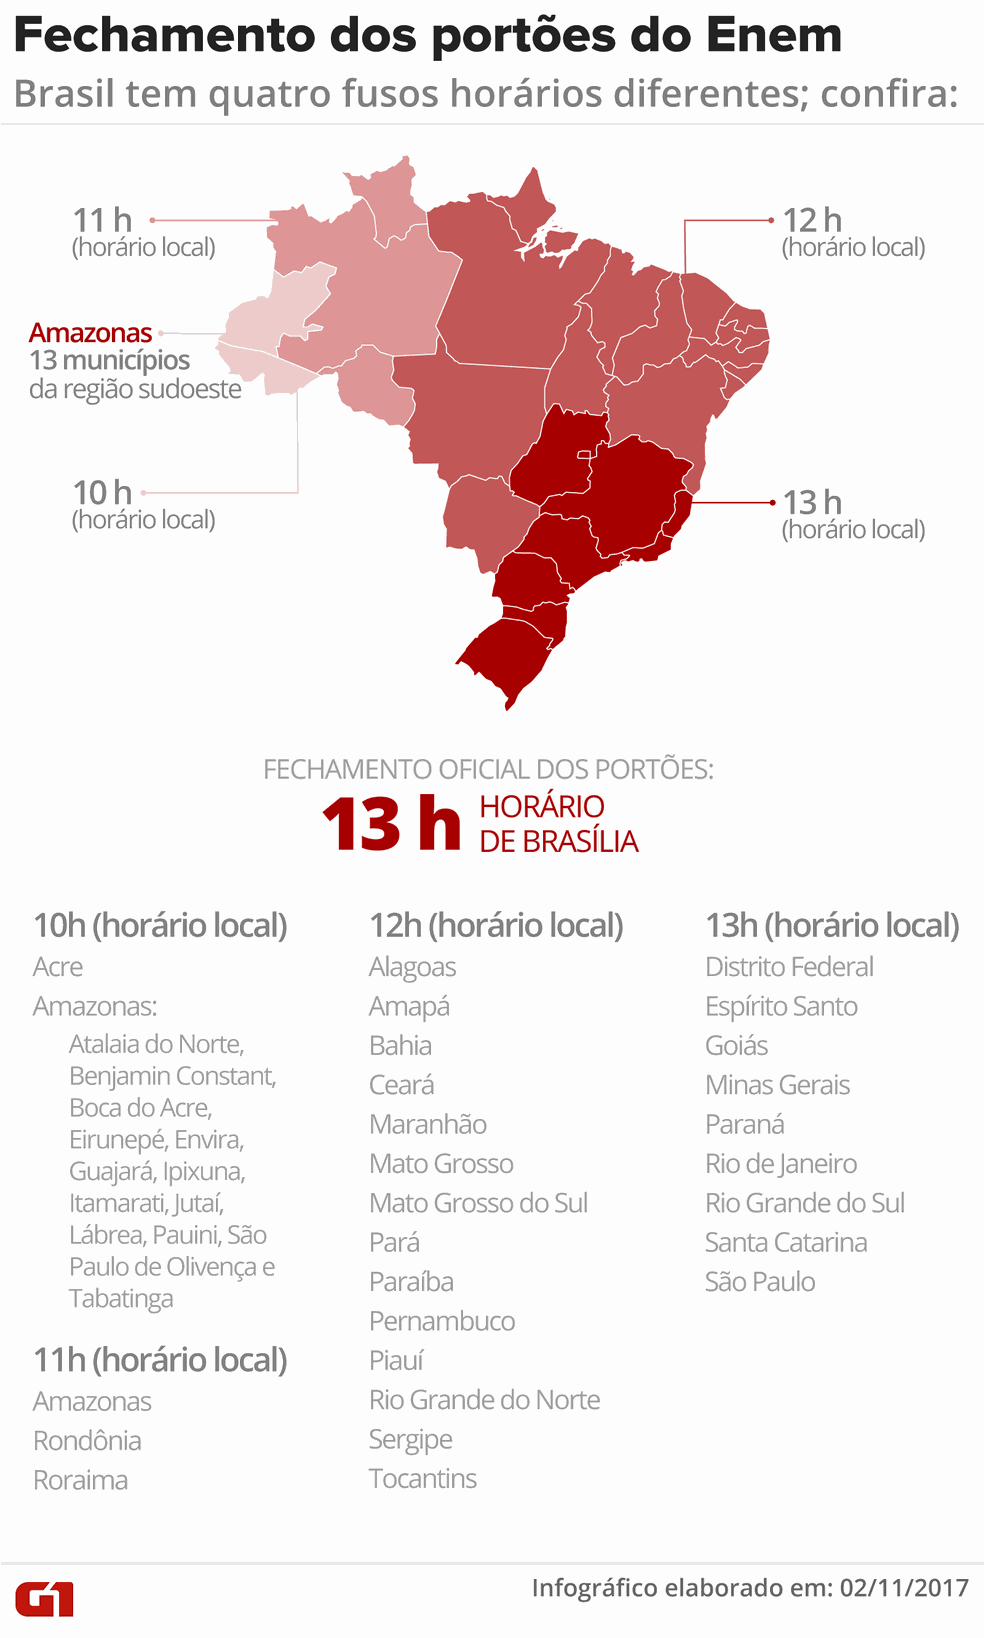 Paraná fica em 8.º lugar no Enem